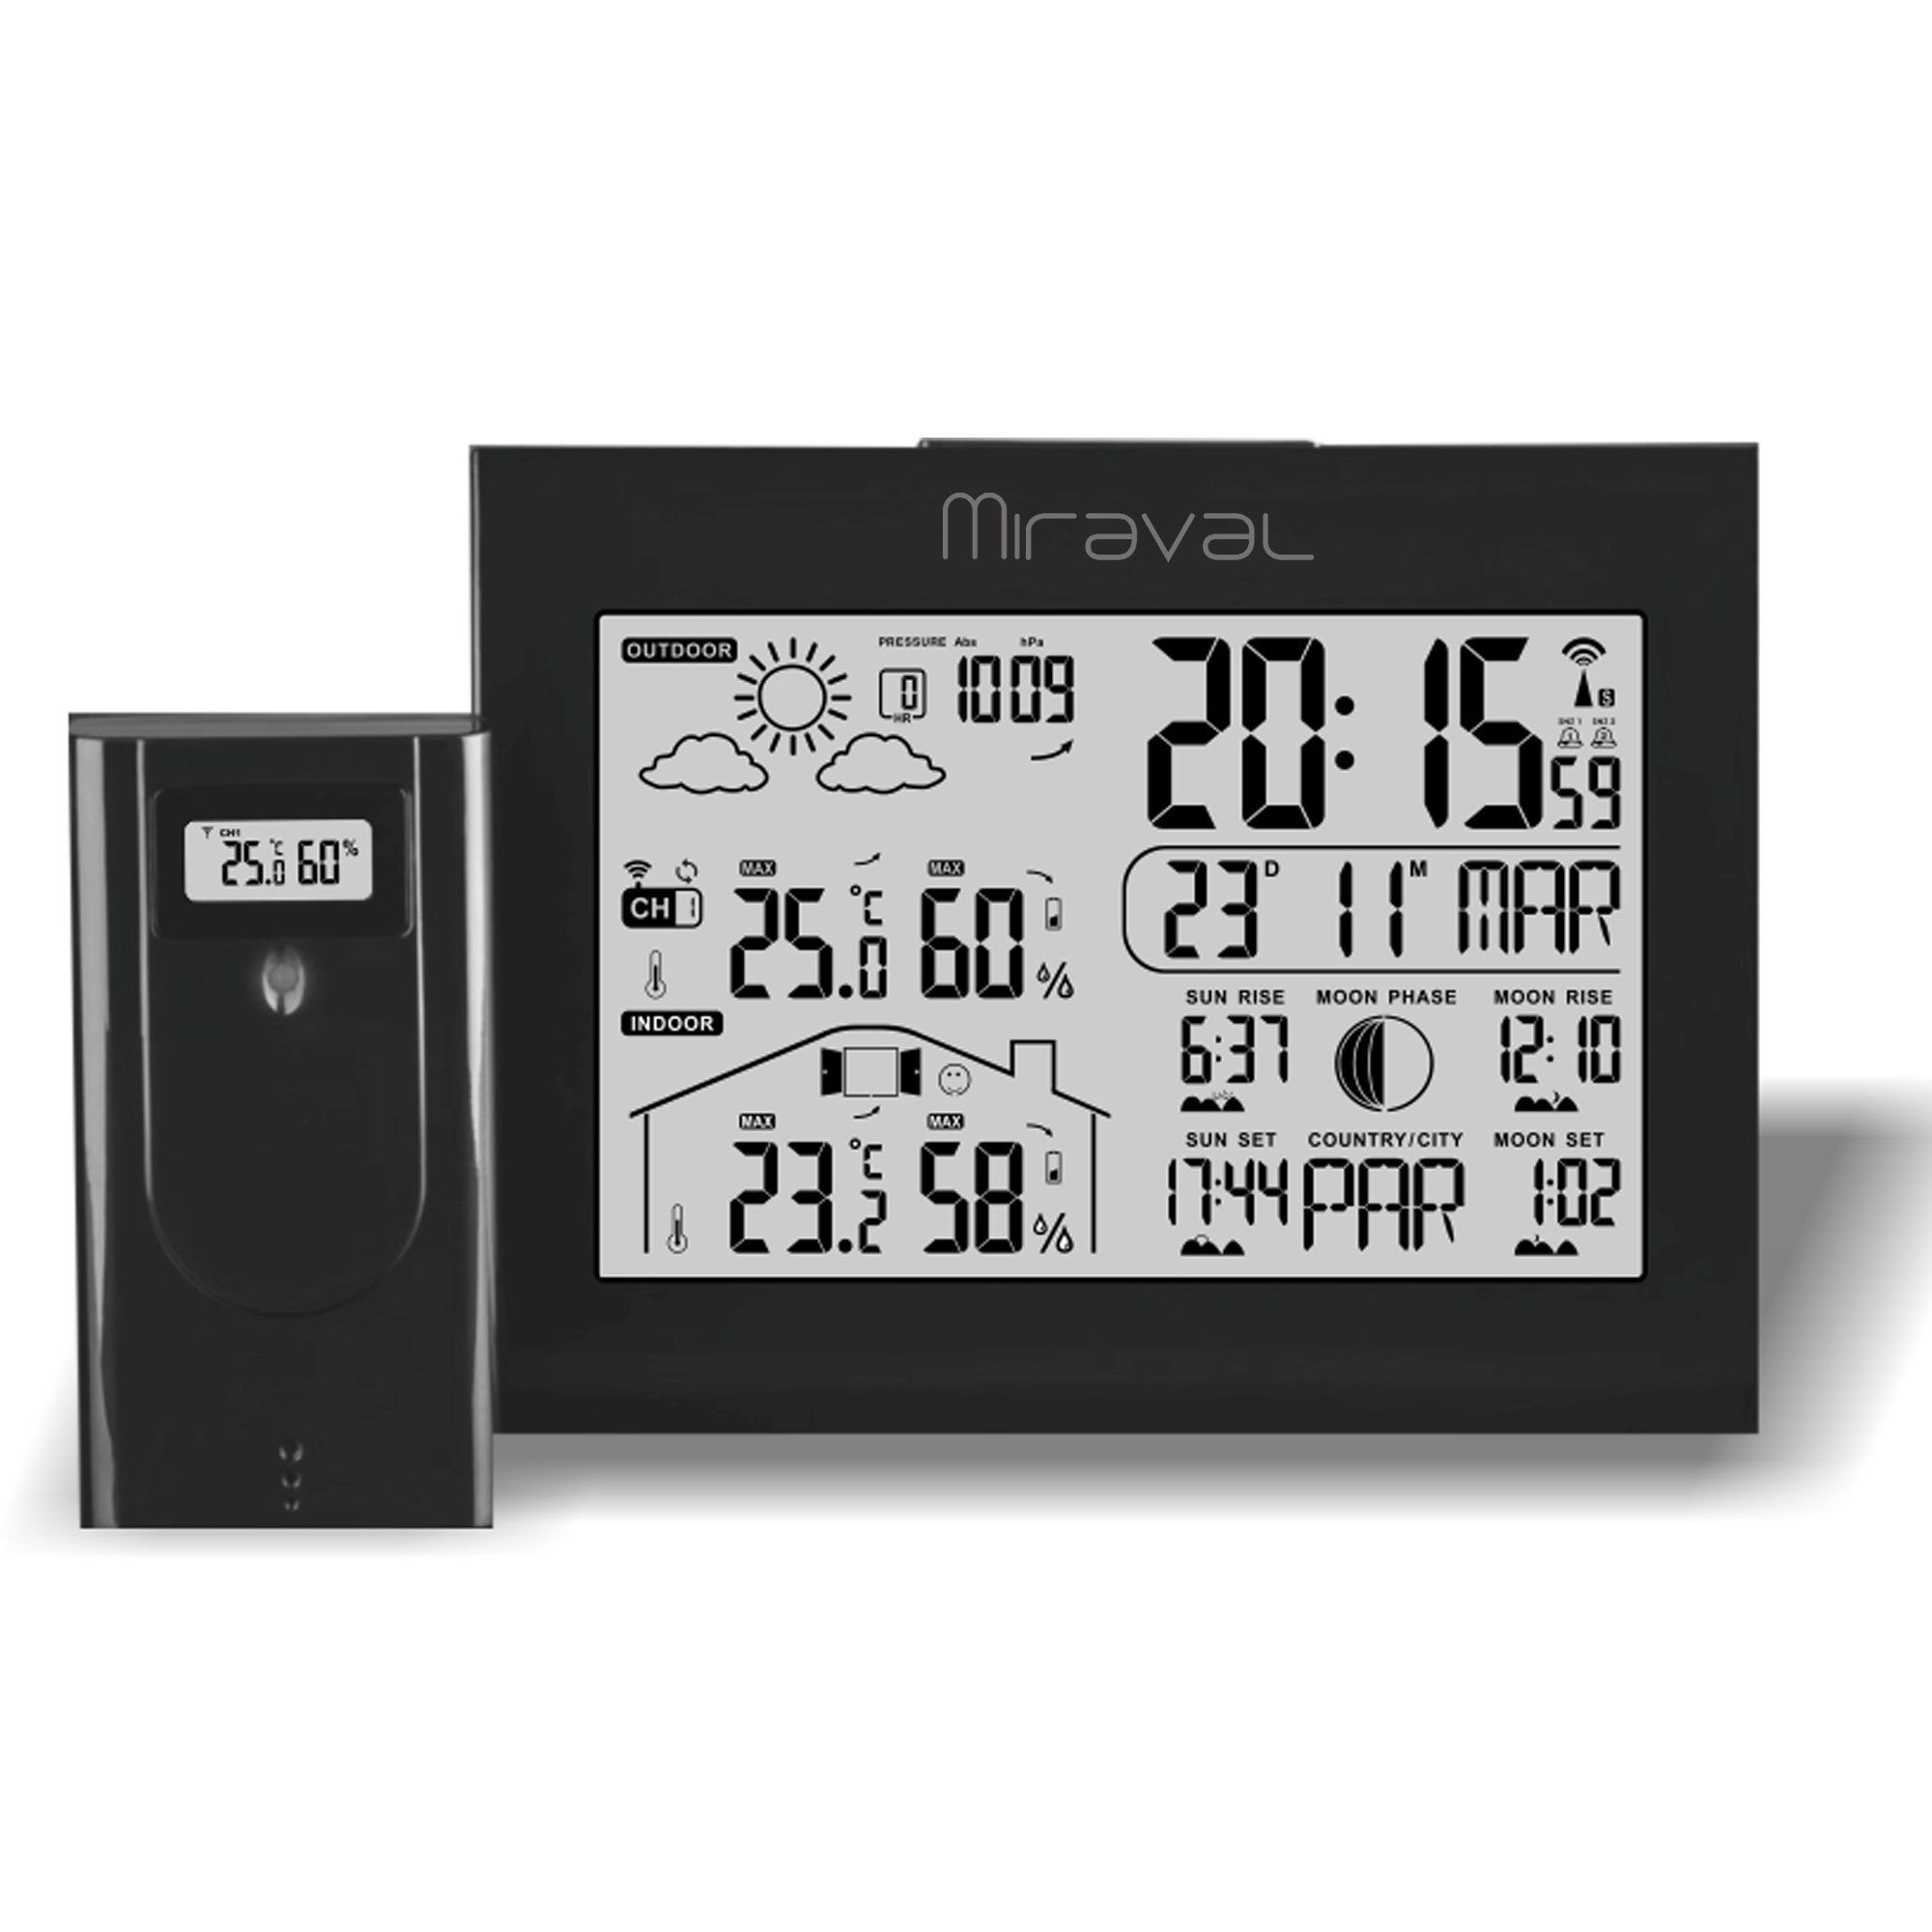 mit Alarm LCD Hygrometer) Displaybeleuchtung Weiß (Temperaturanzeige Funk-Wetterstation Miraval Außensenor Datumsanzeige Funkwetterstation